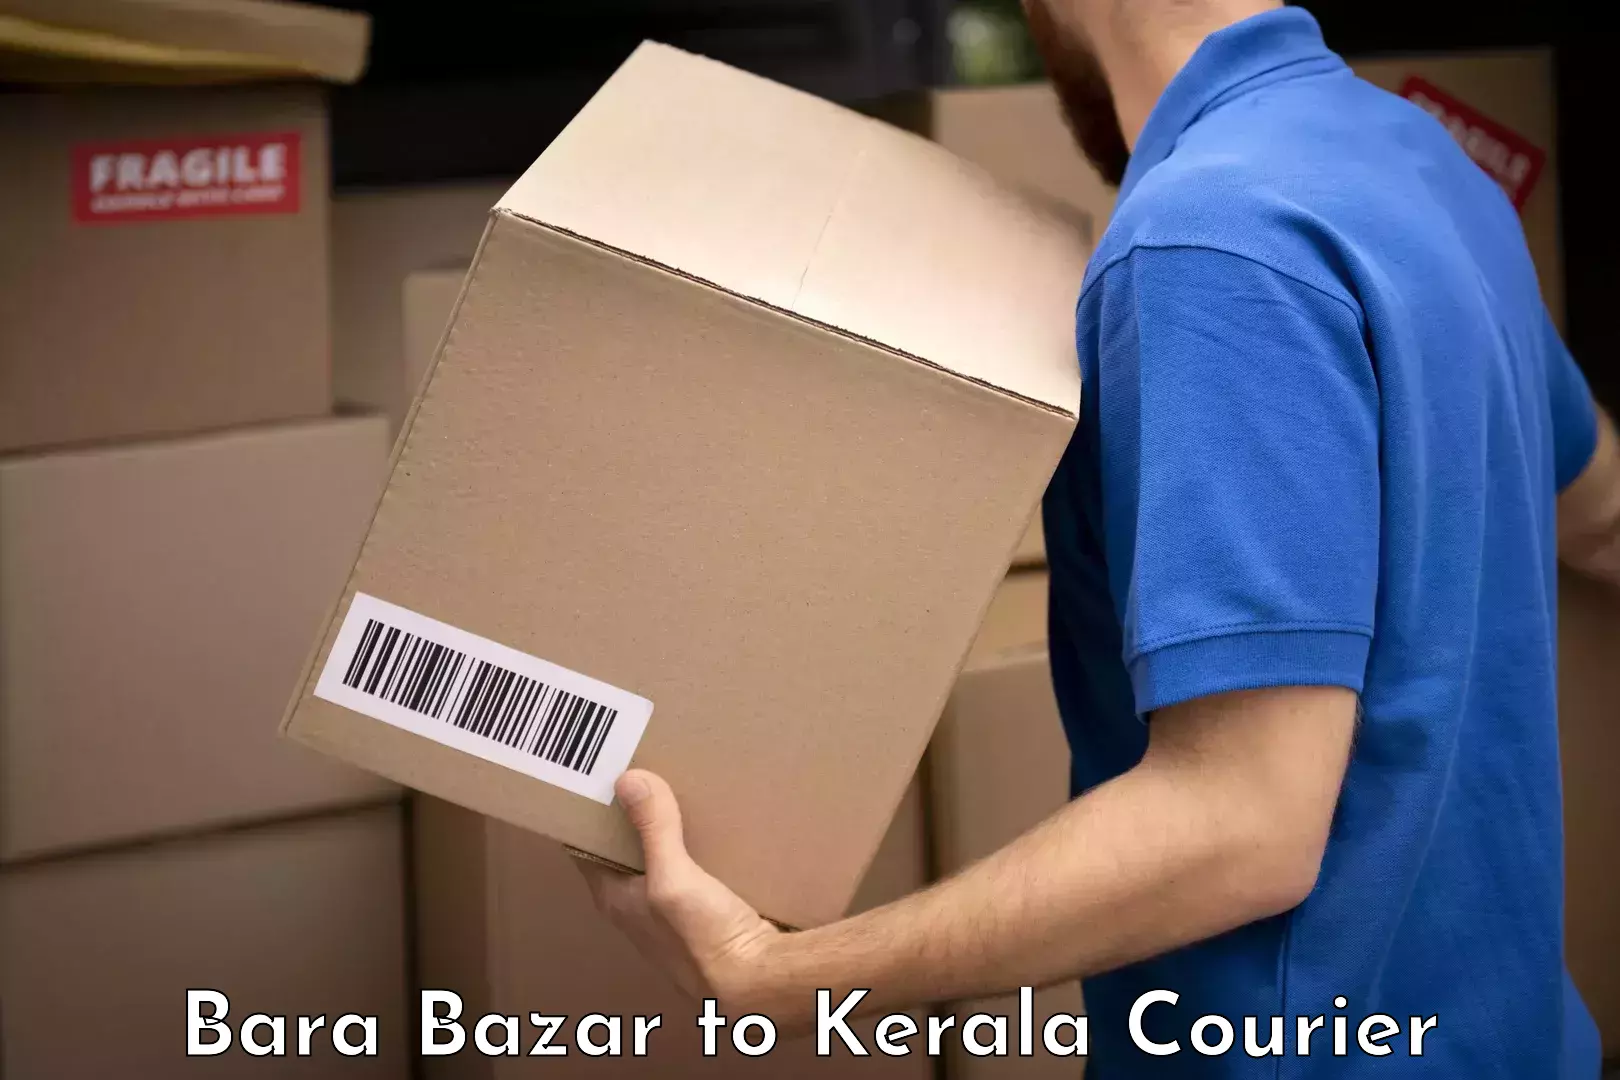 Baggage handling services Bara Bazar to Kerala